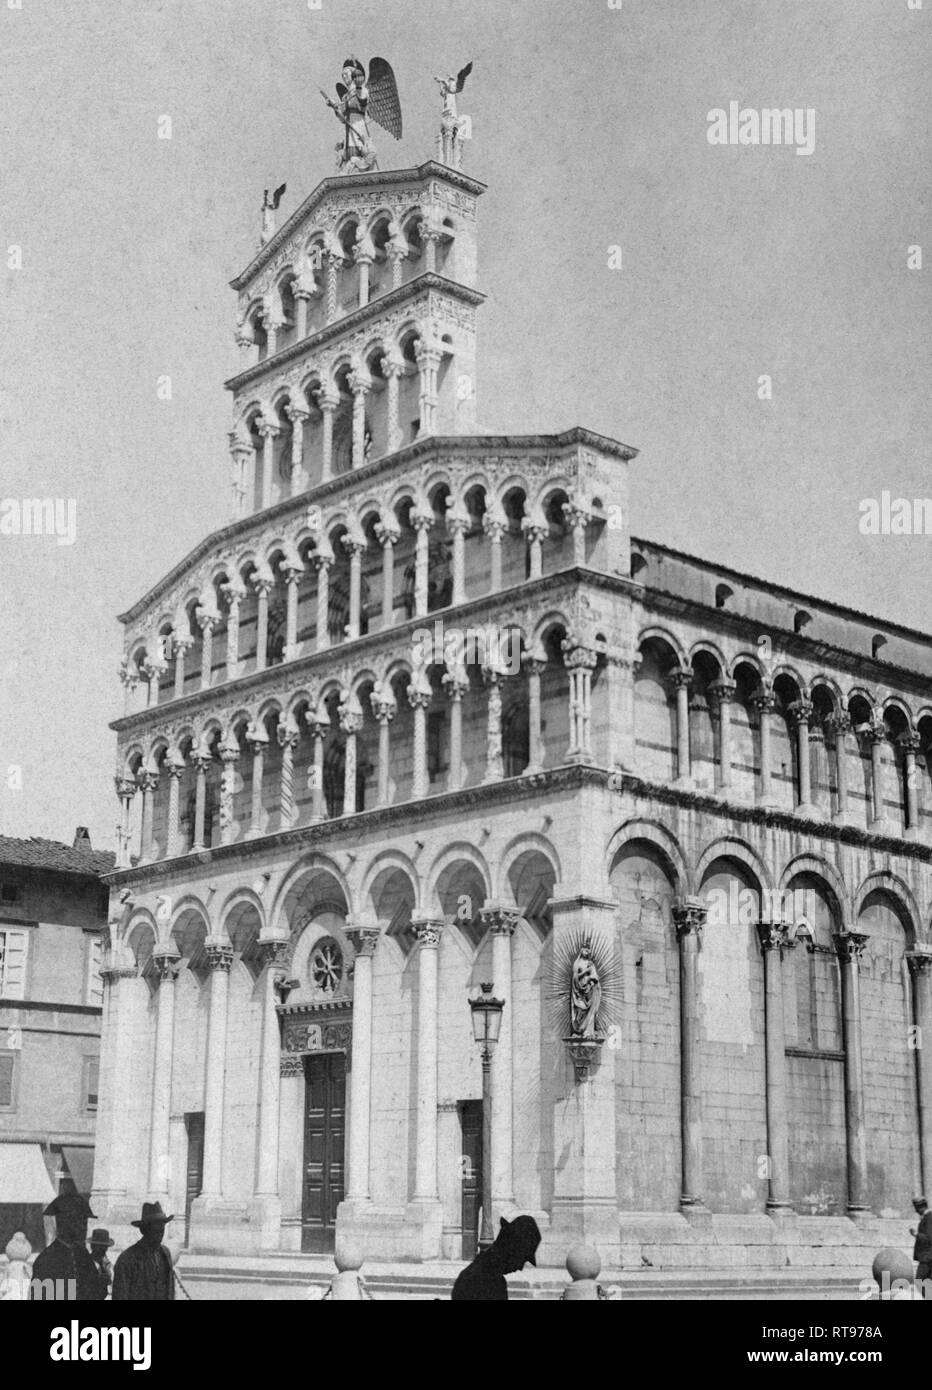 Italia, Toscana, Lucca, vista de la iglesia de San Michele in Foro, 1900 Foto de stock